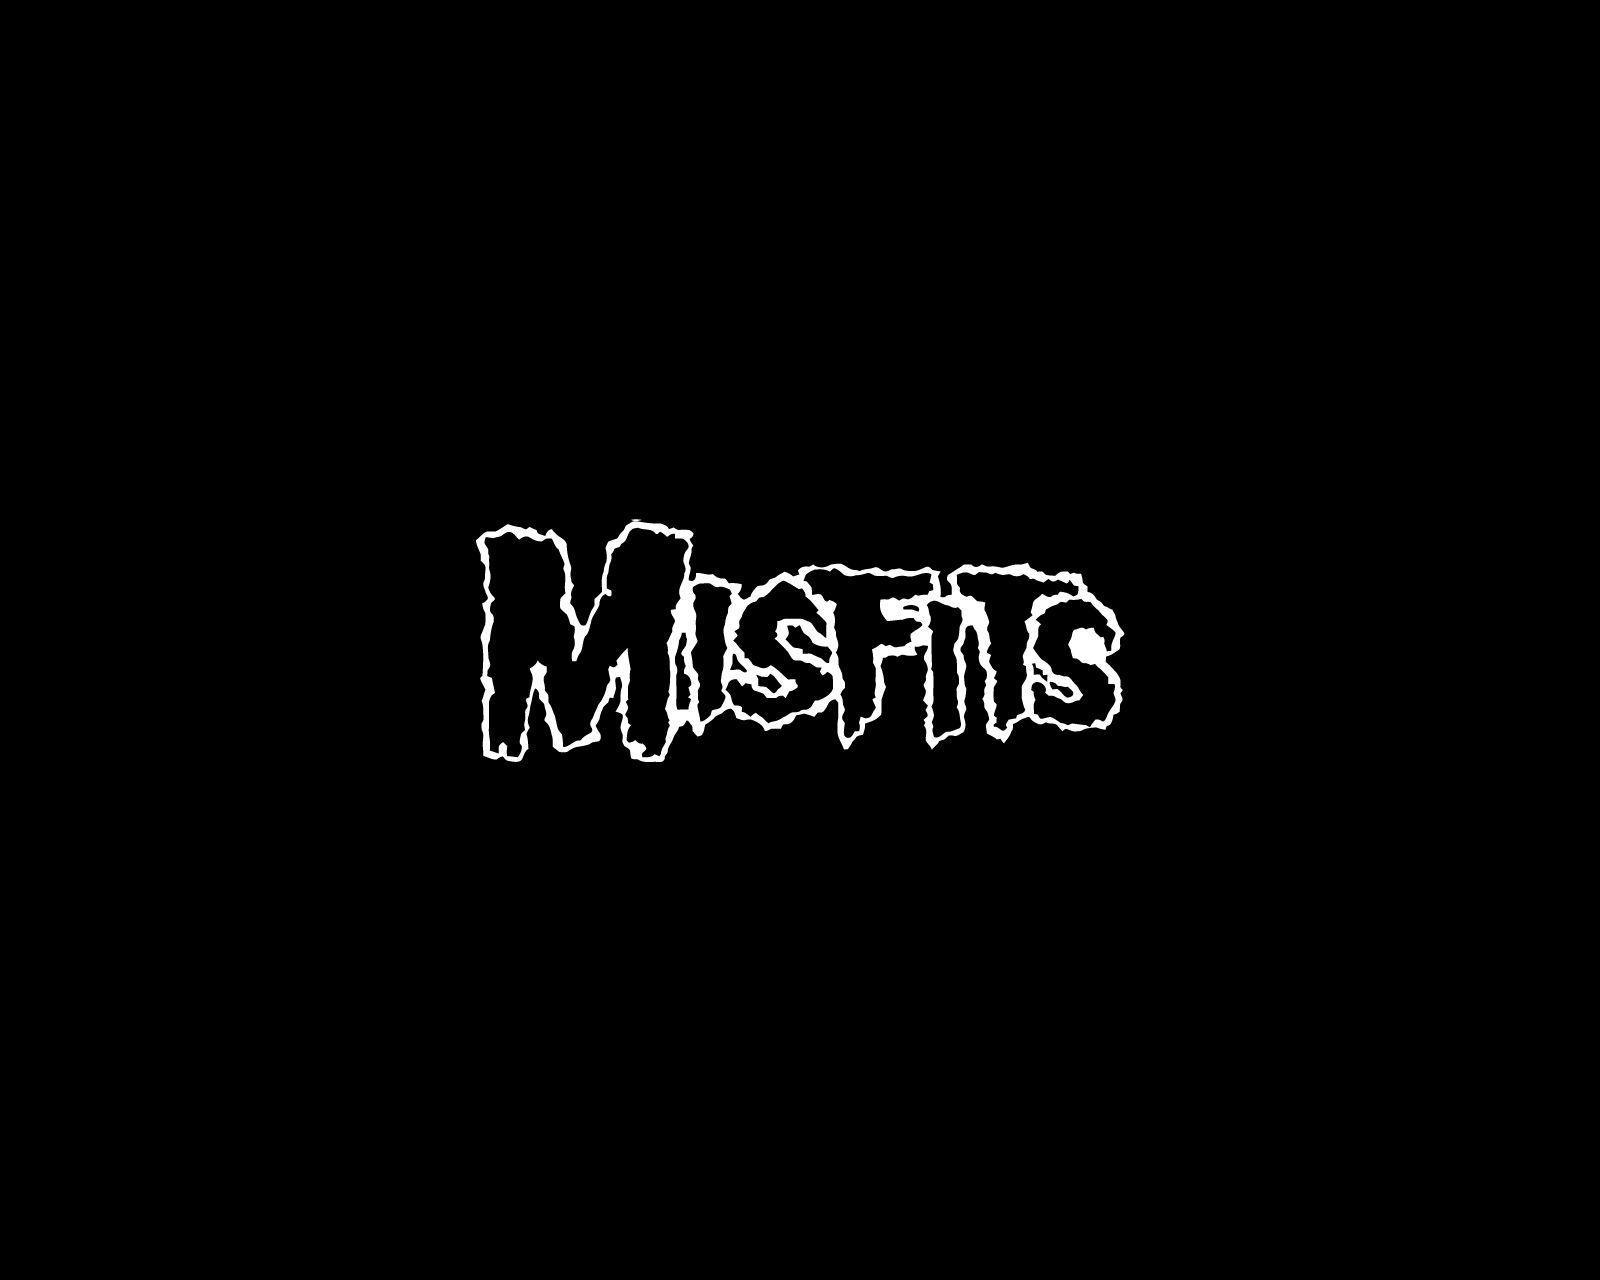 Misfits logo and wallpaper. Band logos band logos, metal